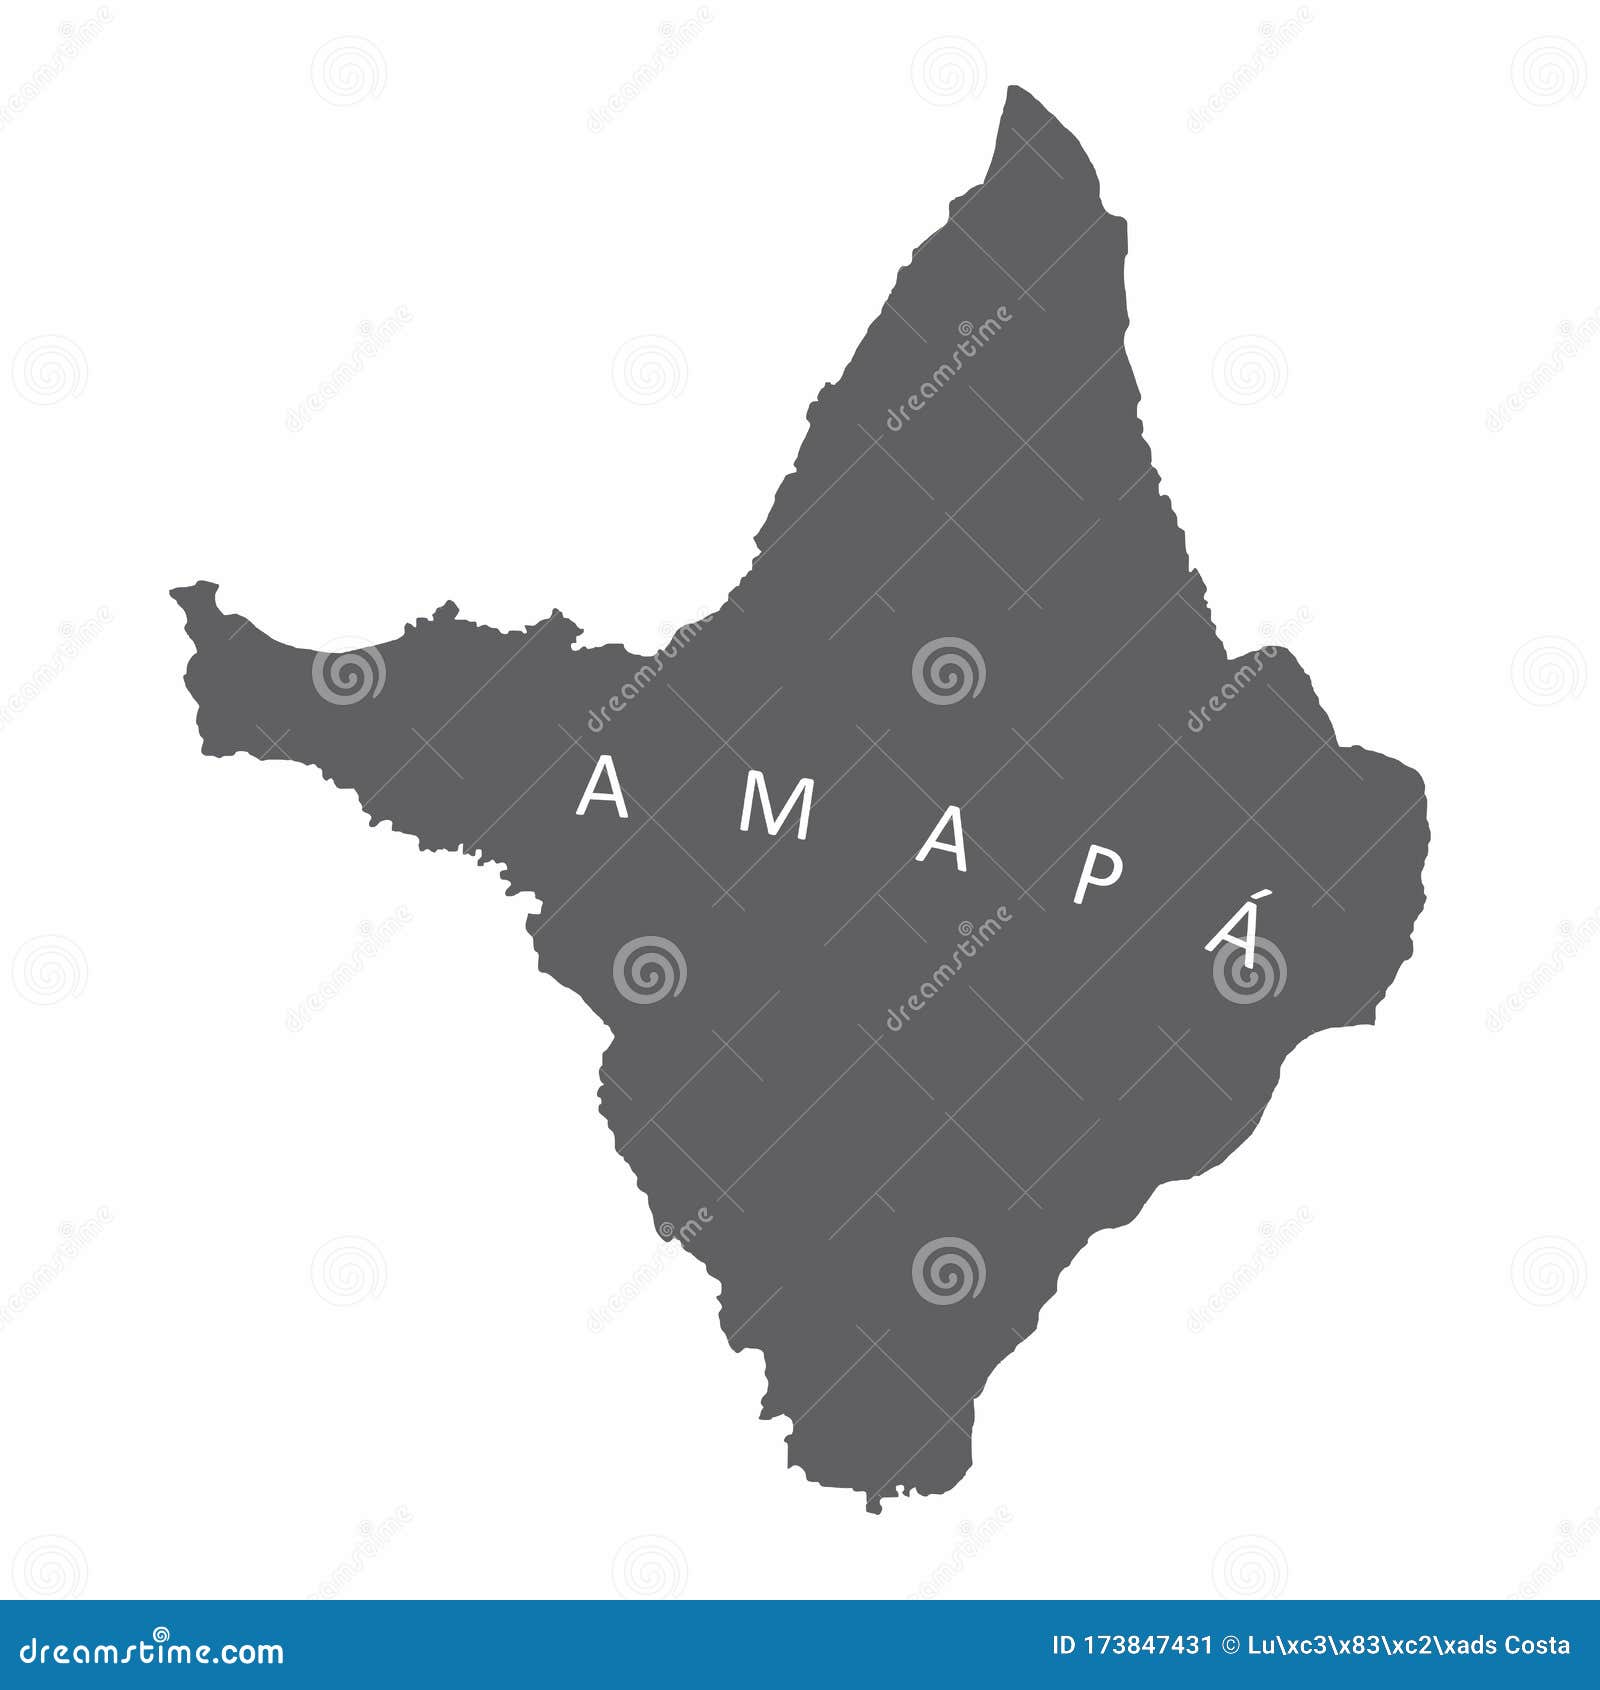 amapa state map silhouette